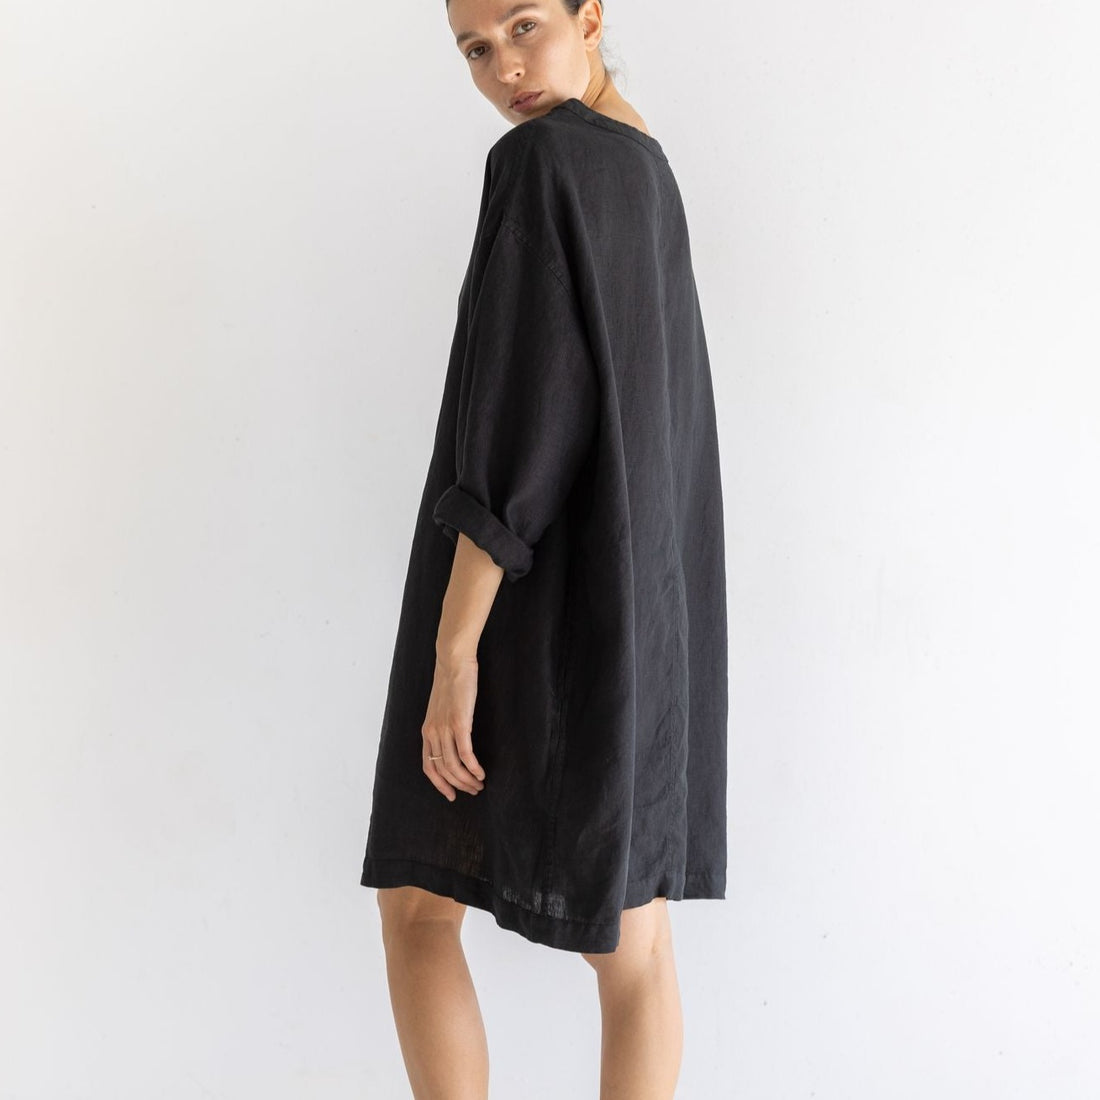 Tunic Linen Dress - Noir